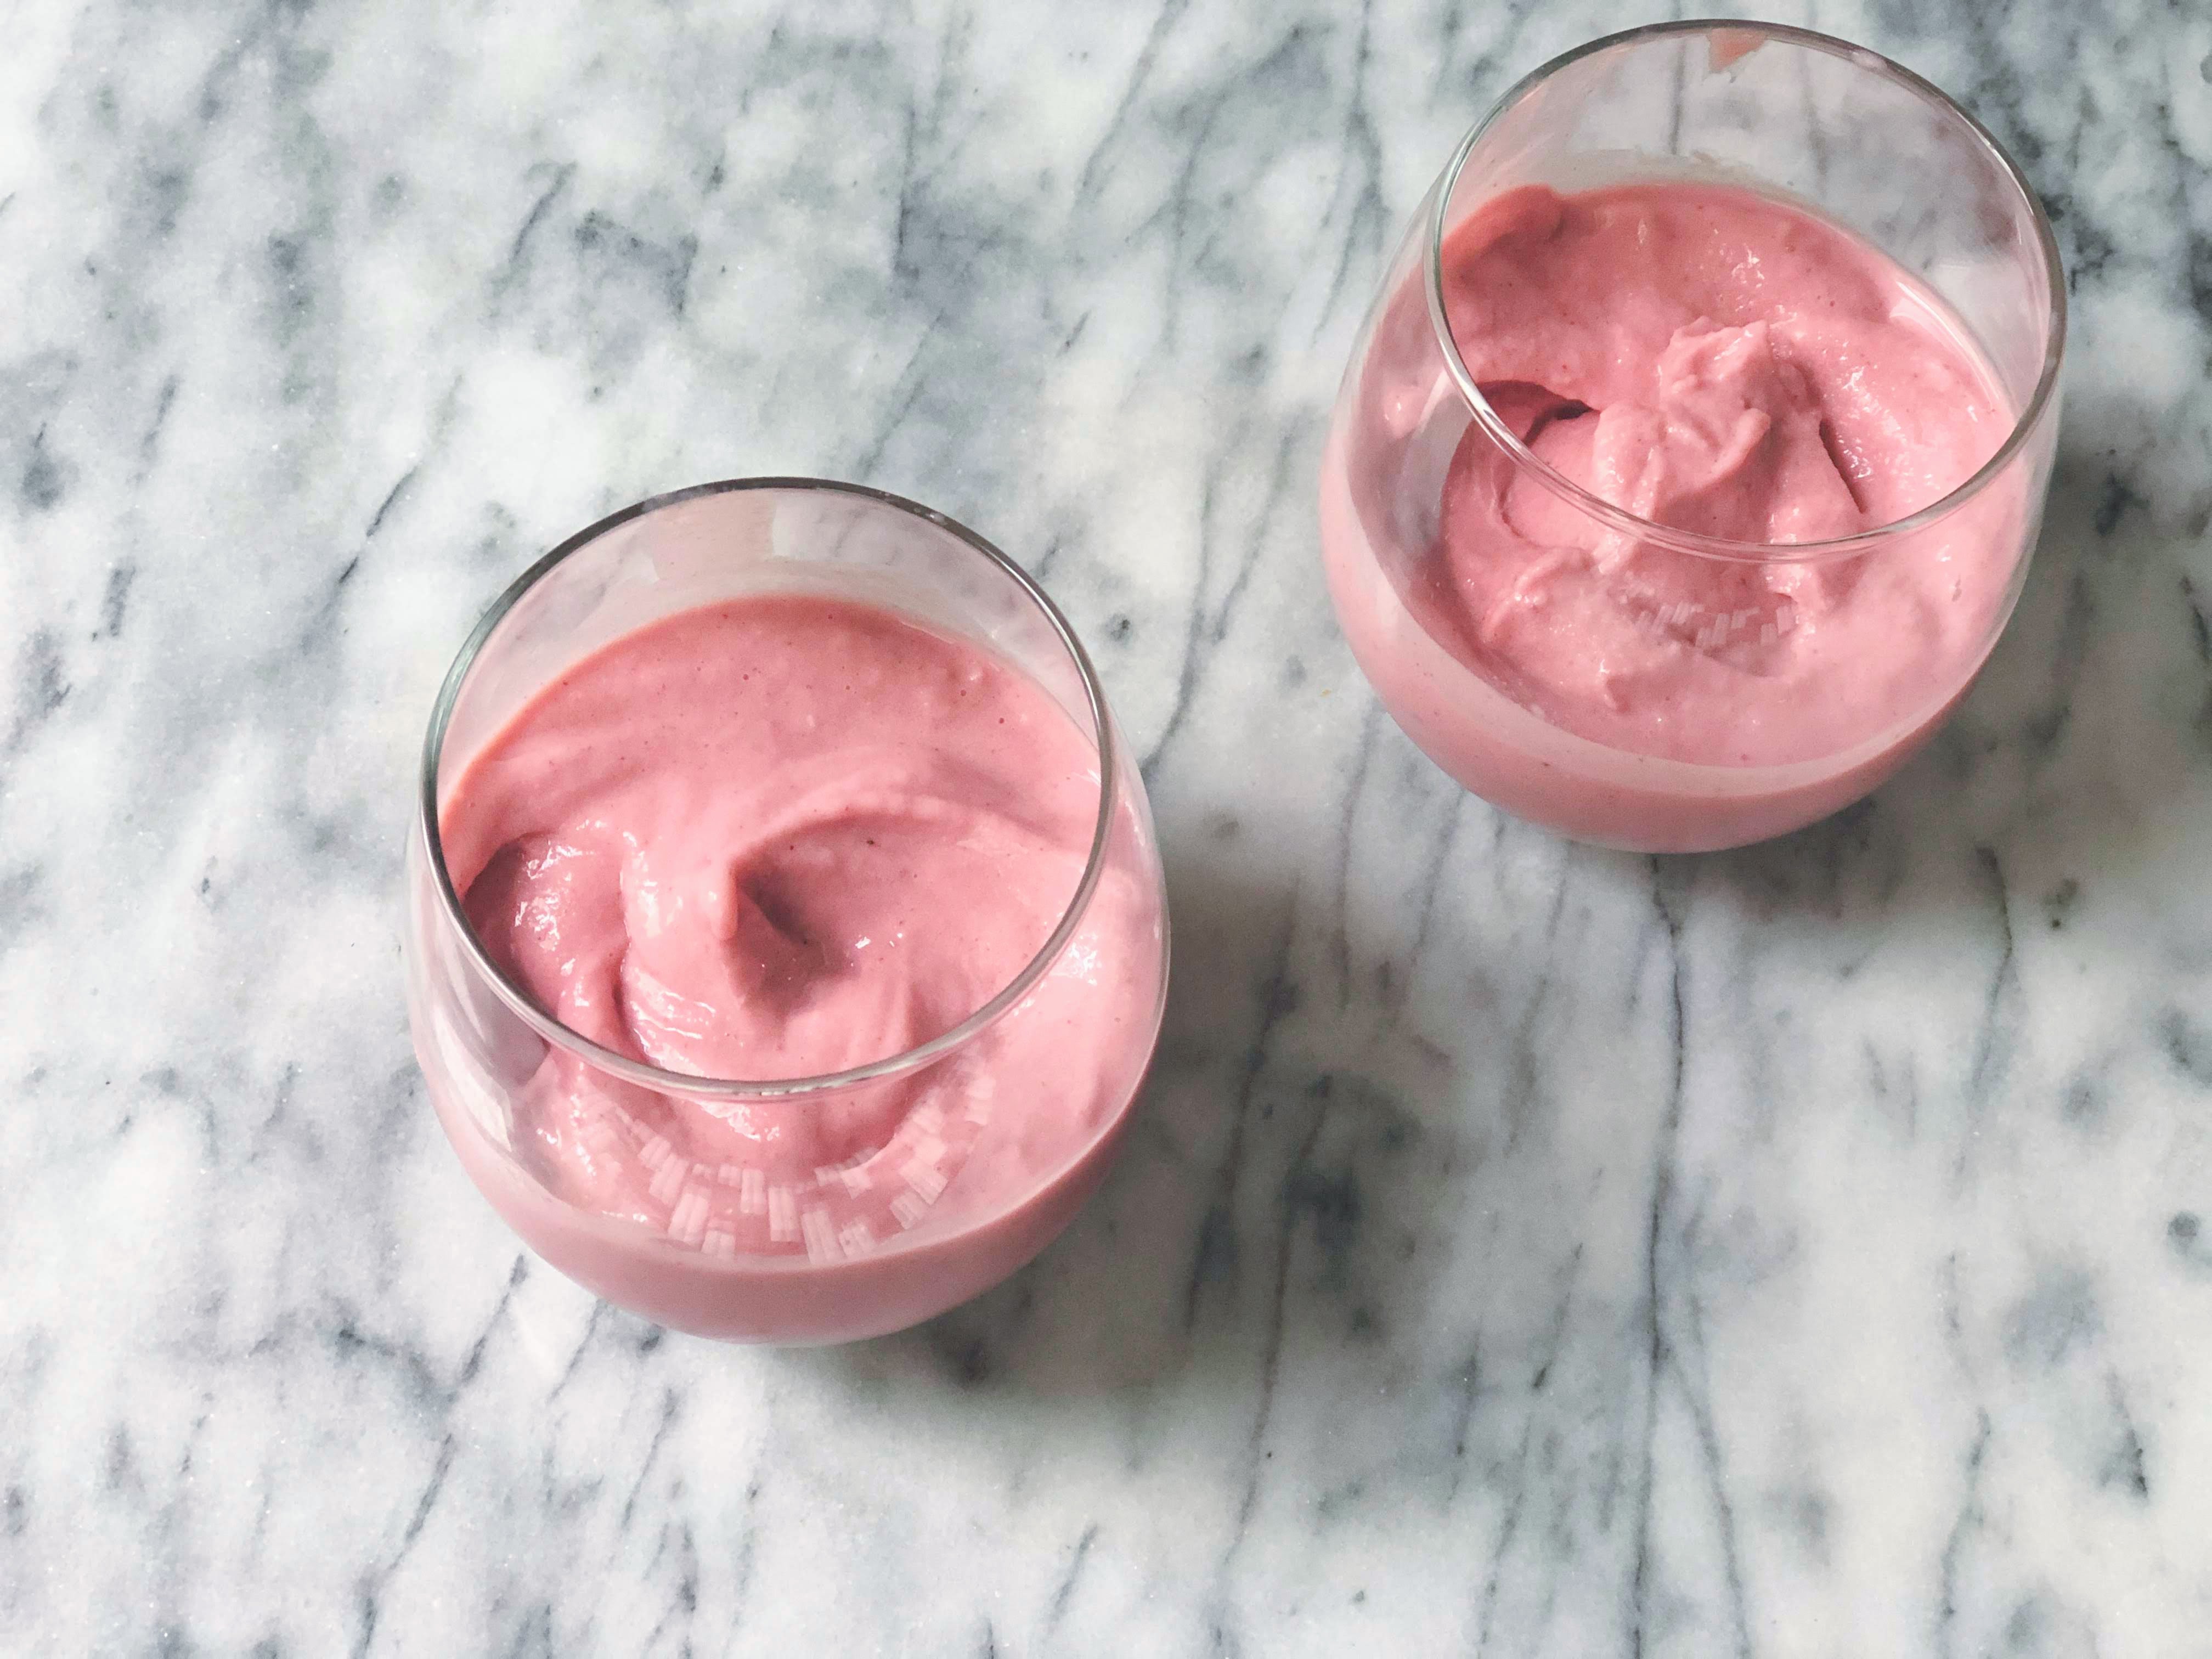 strawberry soft serve ice cream in 2 glasses